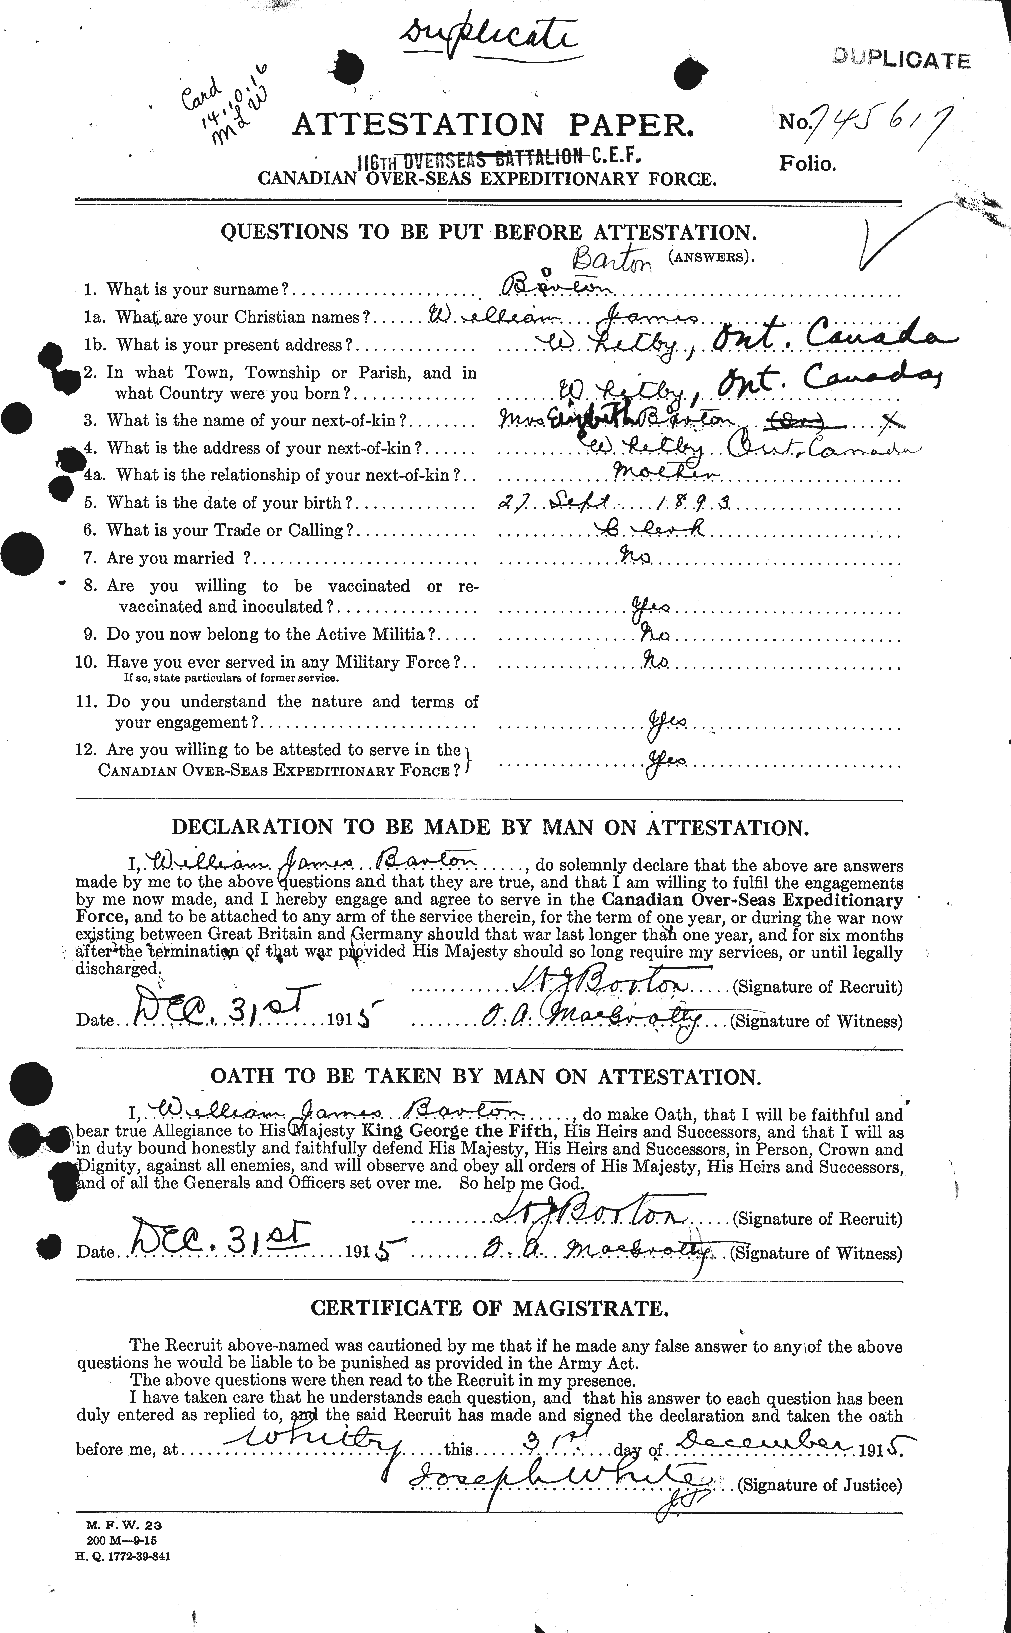 Dossiers du Personnel de la Première Guerre mondiale - CEC 221301a